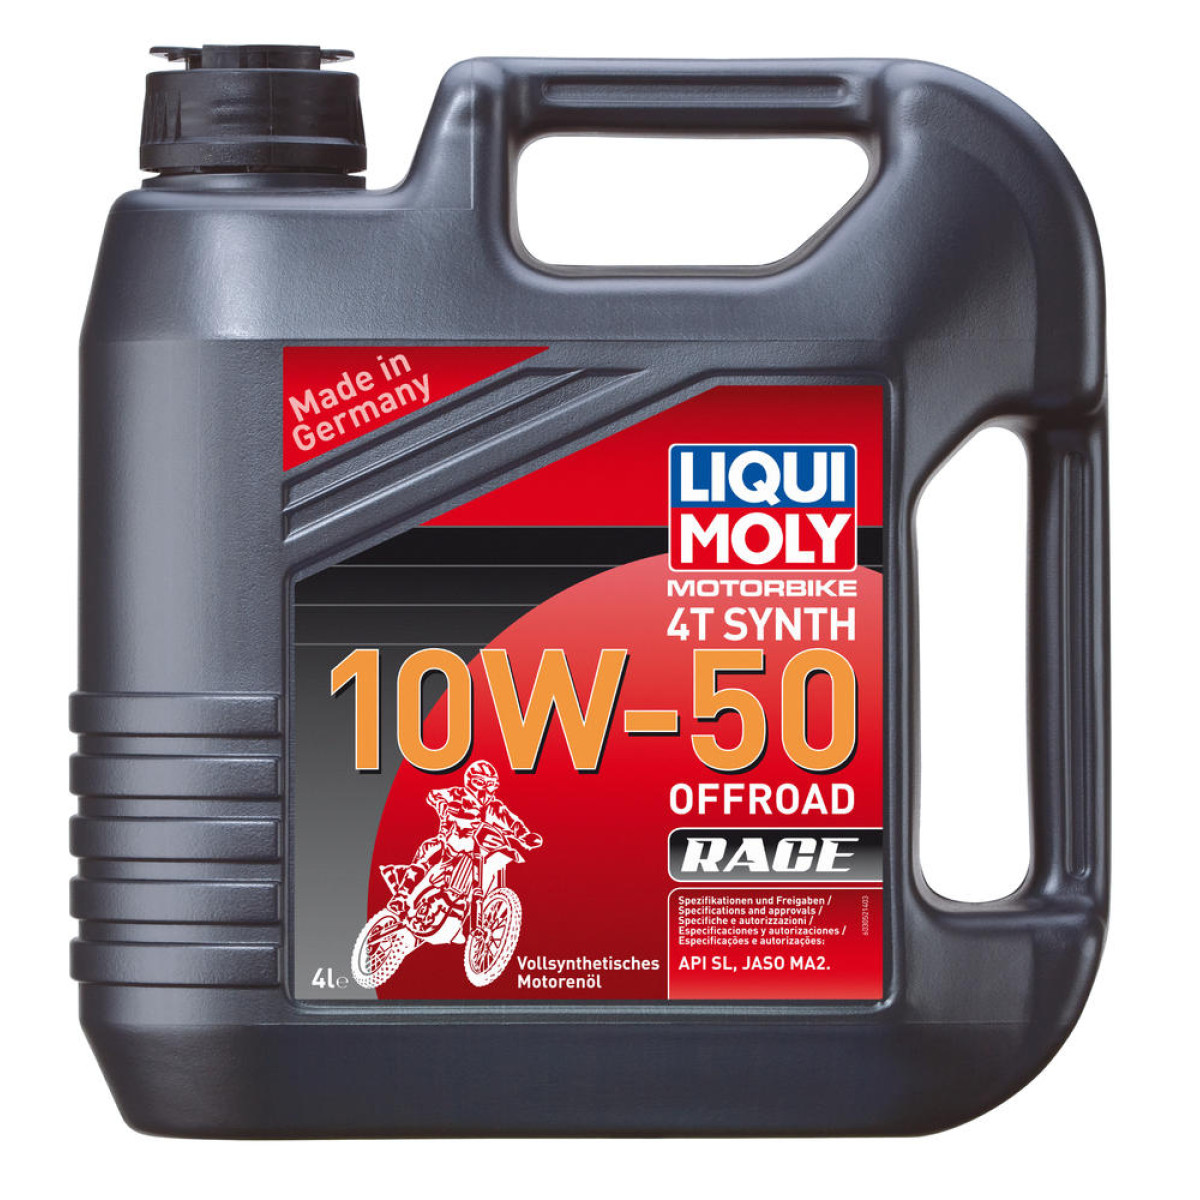 Liqui Moly Motor Oil Offroad Race 10W50, 4 Liter